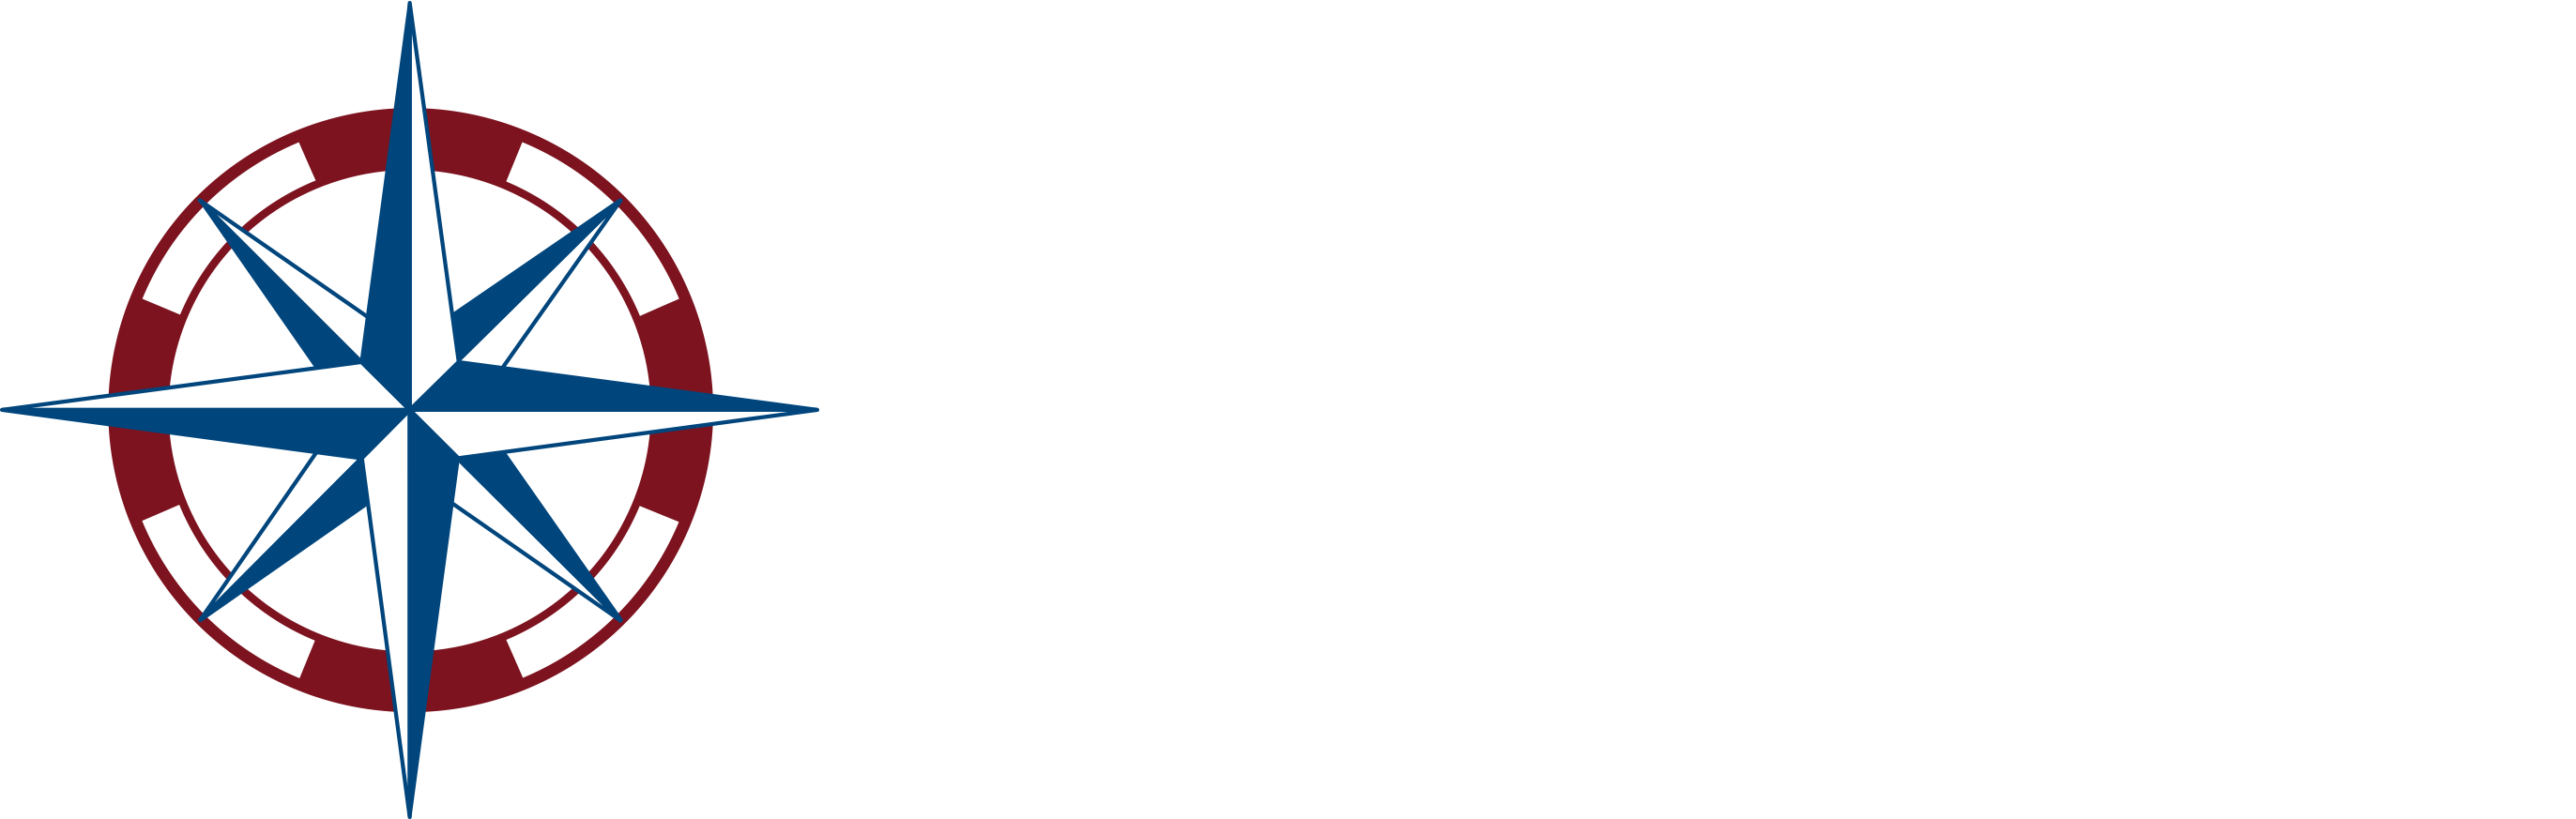 Eastern Retail Properties